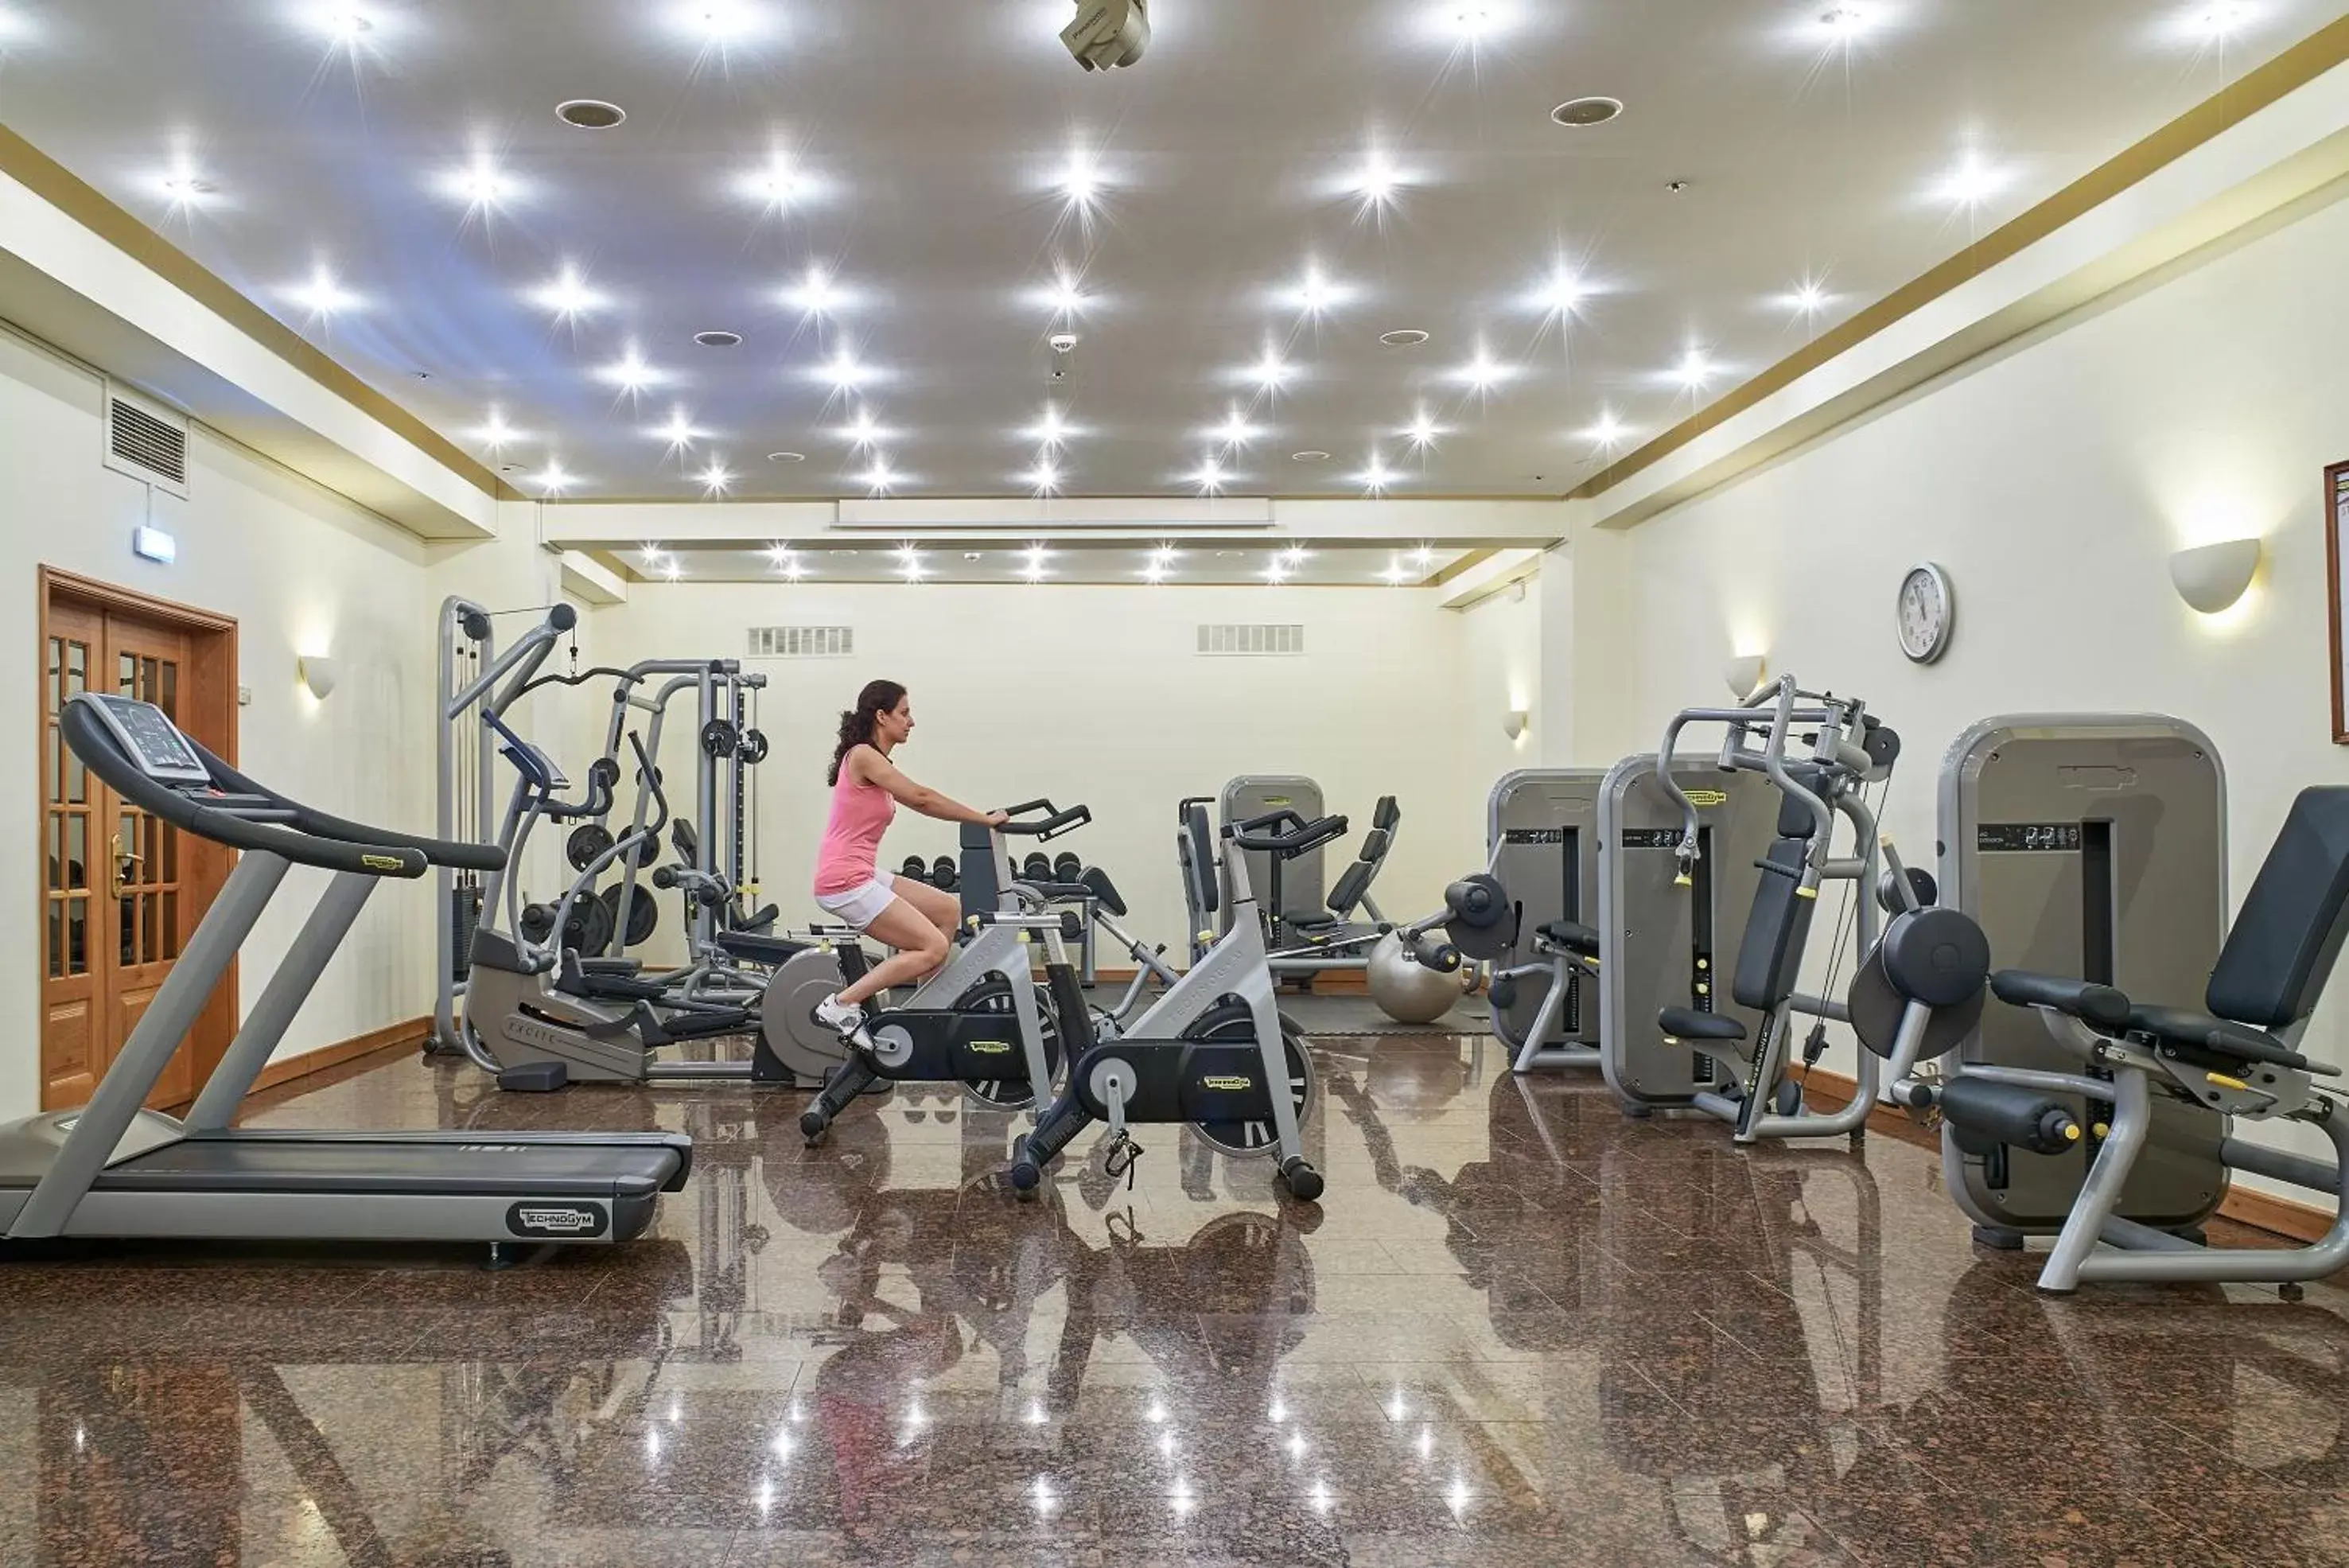 Fitness centre/facilities, Fitness Center/Facilities in Penina Hotel & Golf Resort